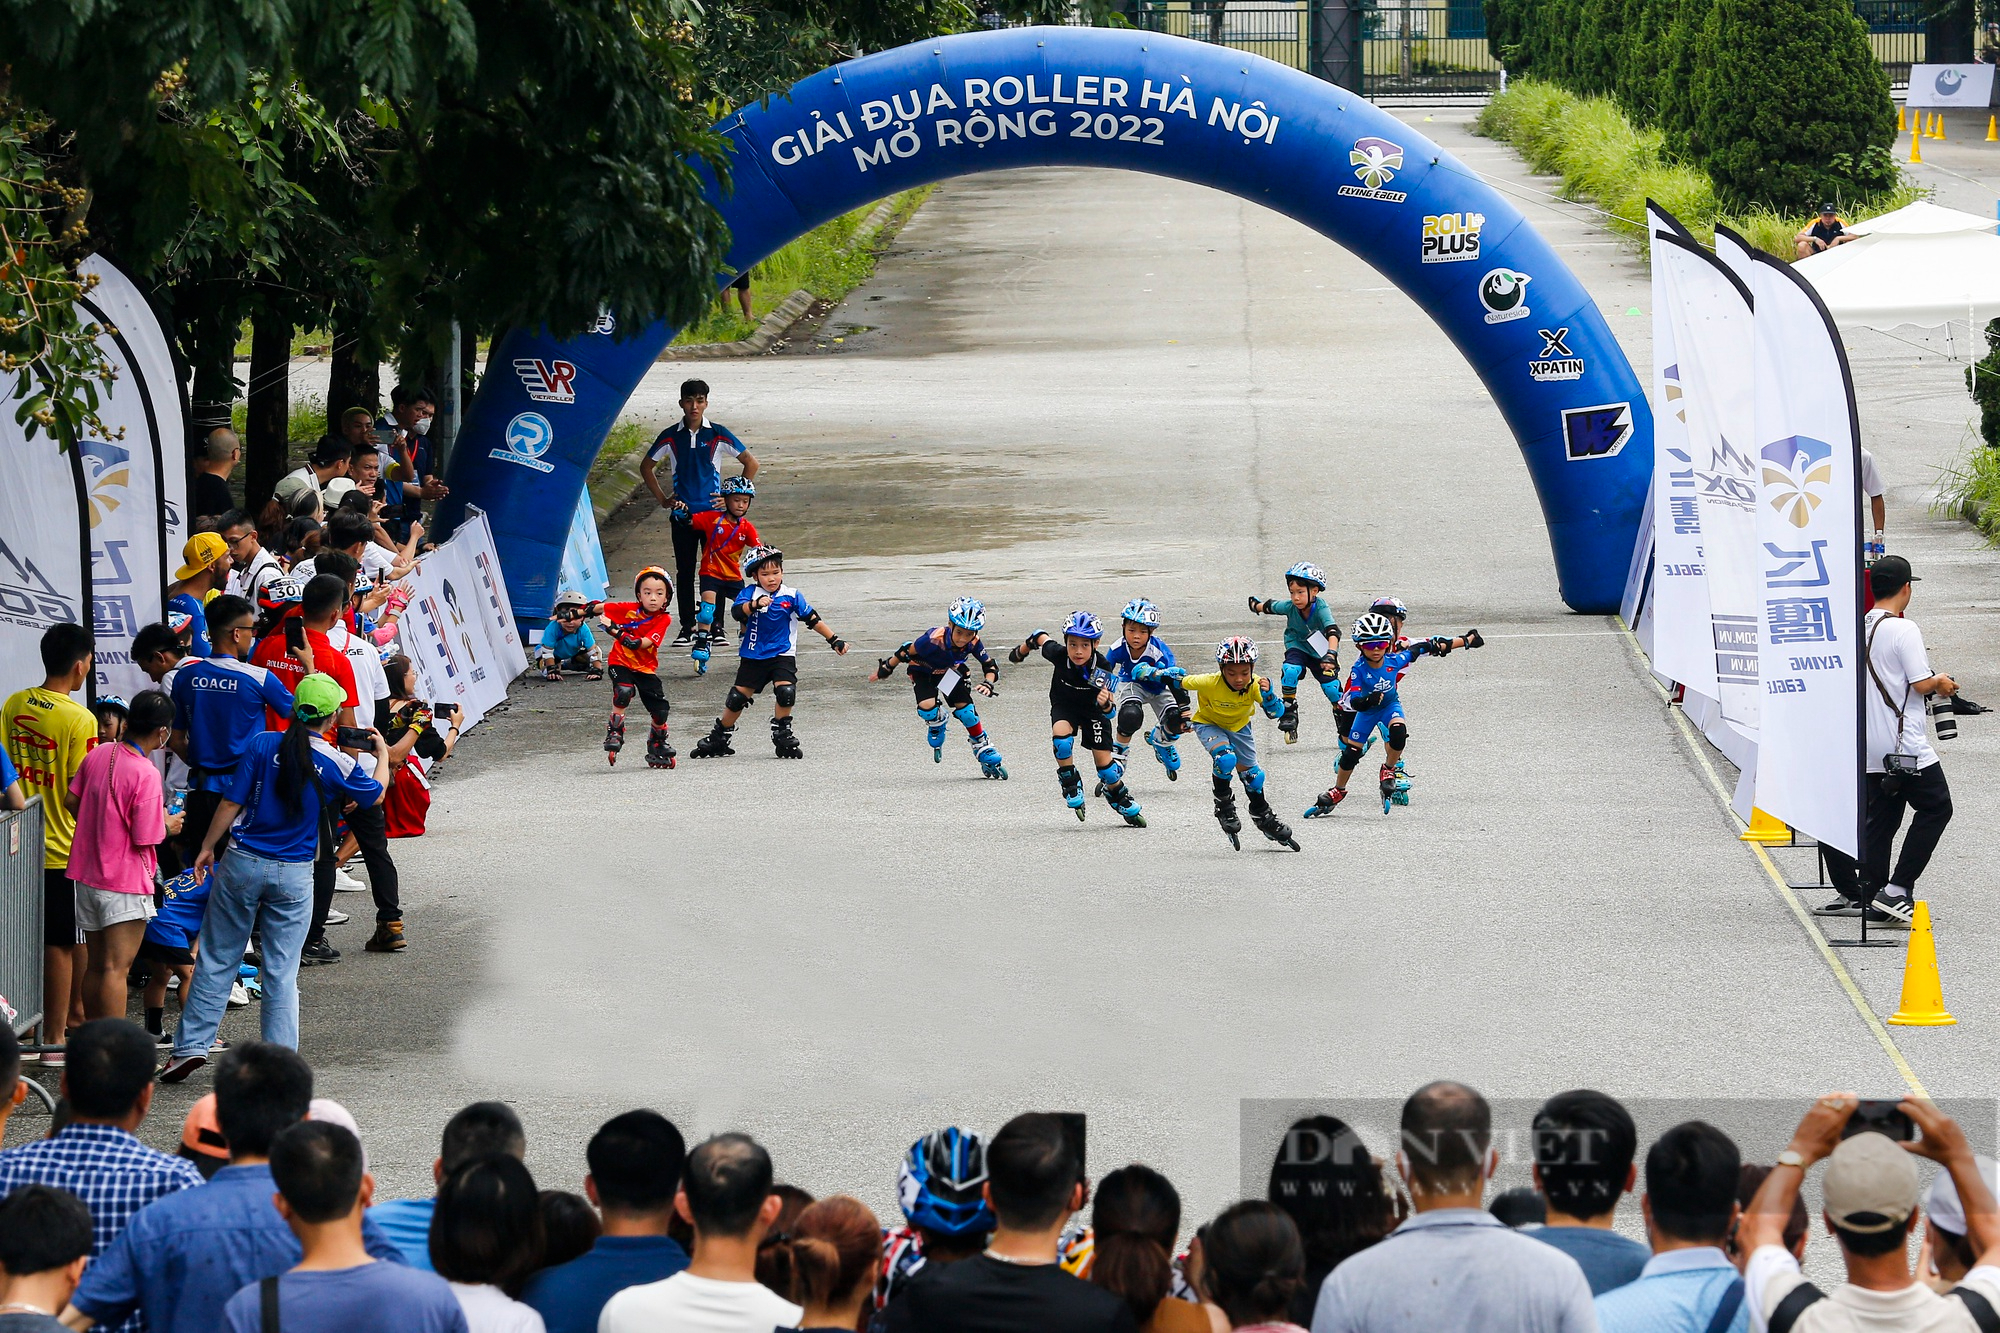 Hàng nghìn vận động viên nhí tranh tài tại giải đua Roller Hà Nội mở rộng 2022 - Ảnh 1.